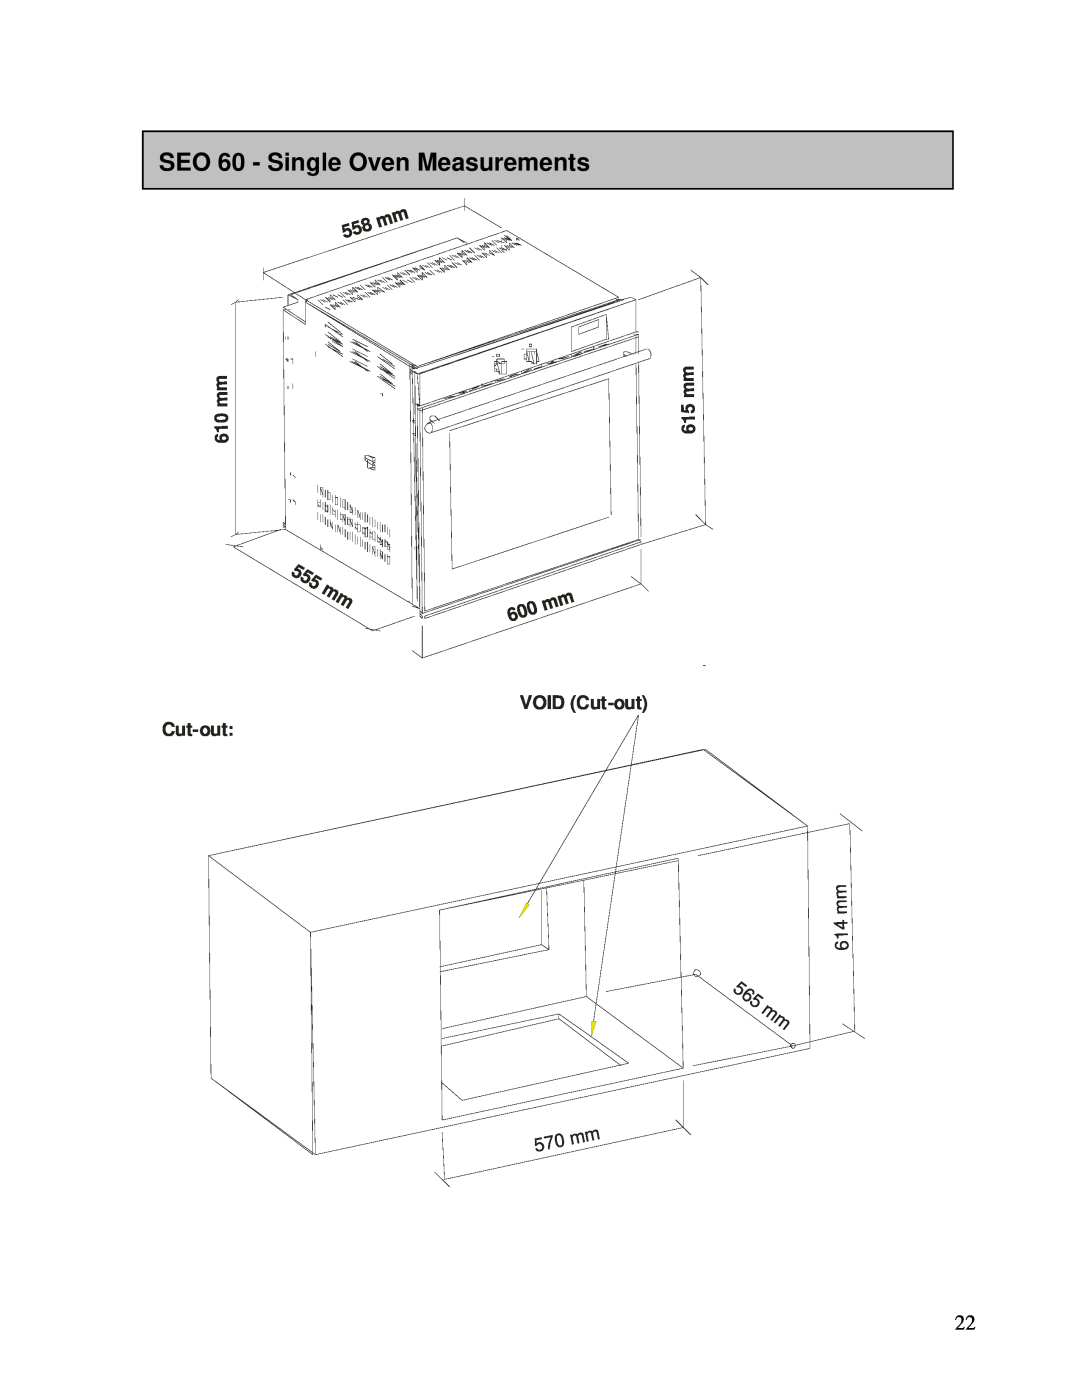 AEG DEO76, DE076 user manual SEO 60 - Single Oven Measurements, 5 6 5 mm, m m 0 1, m m 5 1, VOID Cut-out, m m 4 1 